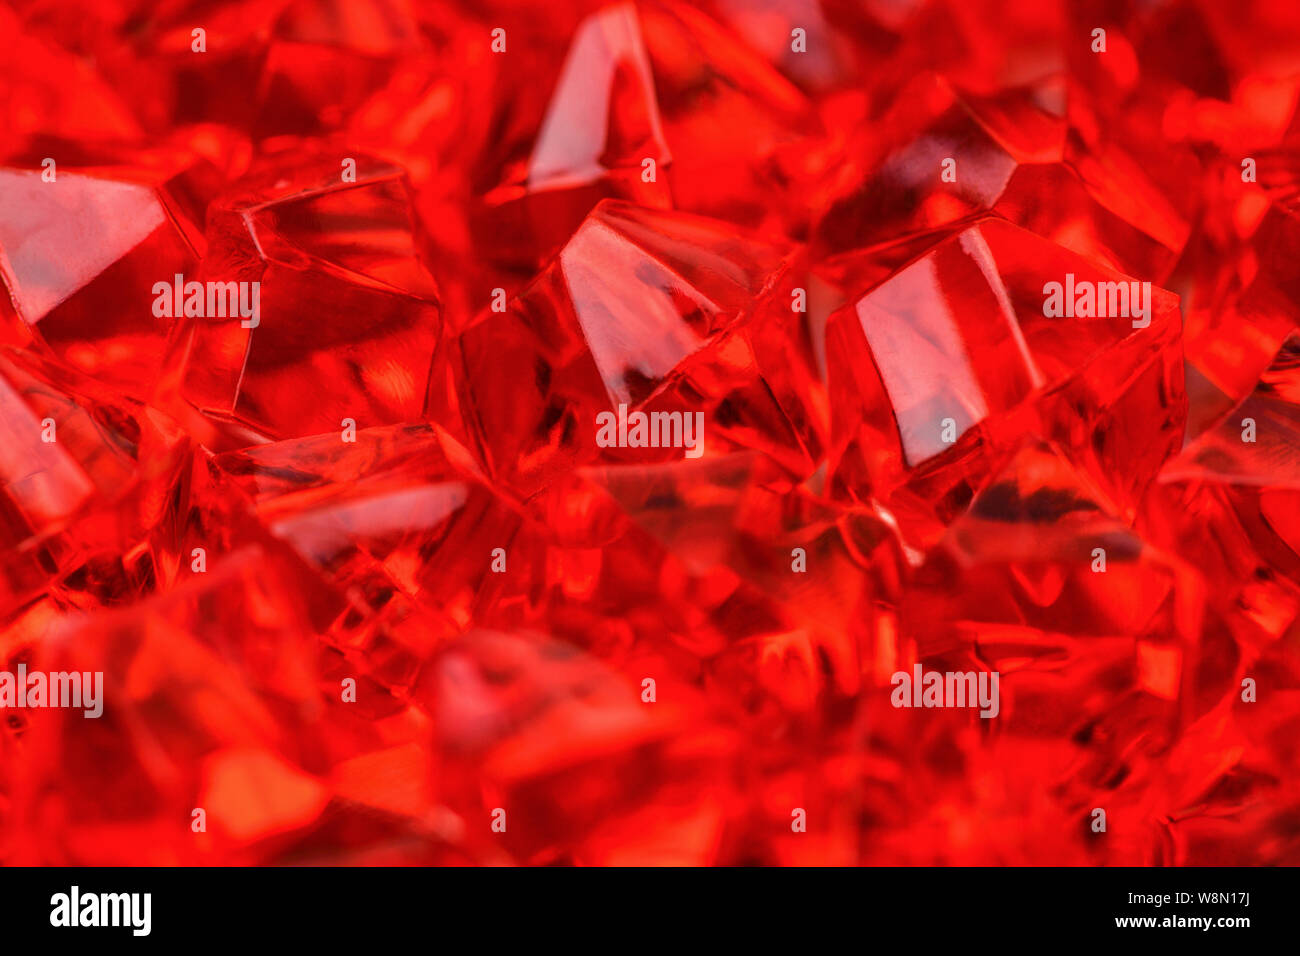 Beaucoup de cristaux d'un rouge vif cramoisi close-up. La macro photographie. Photographie horizontale Banque D'Images